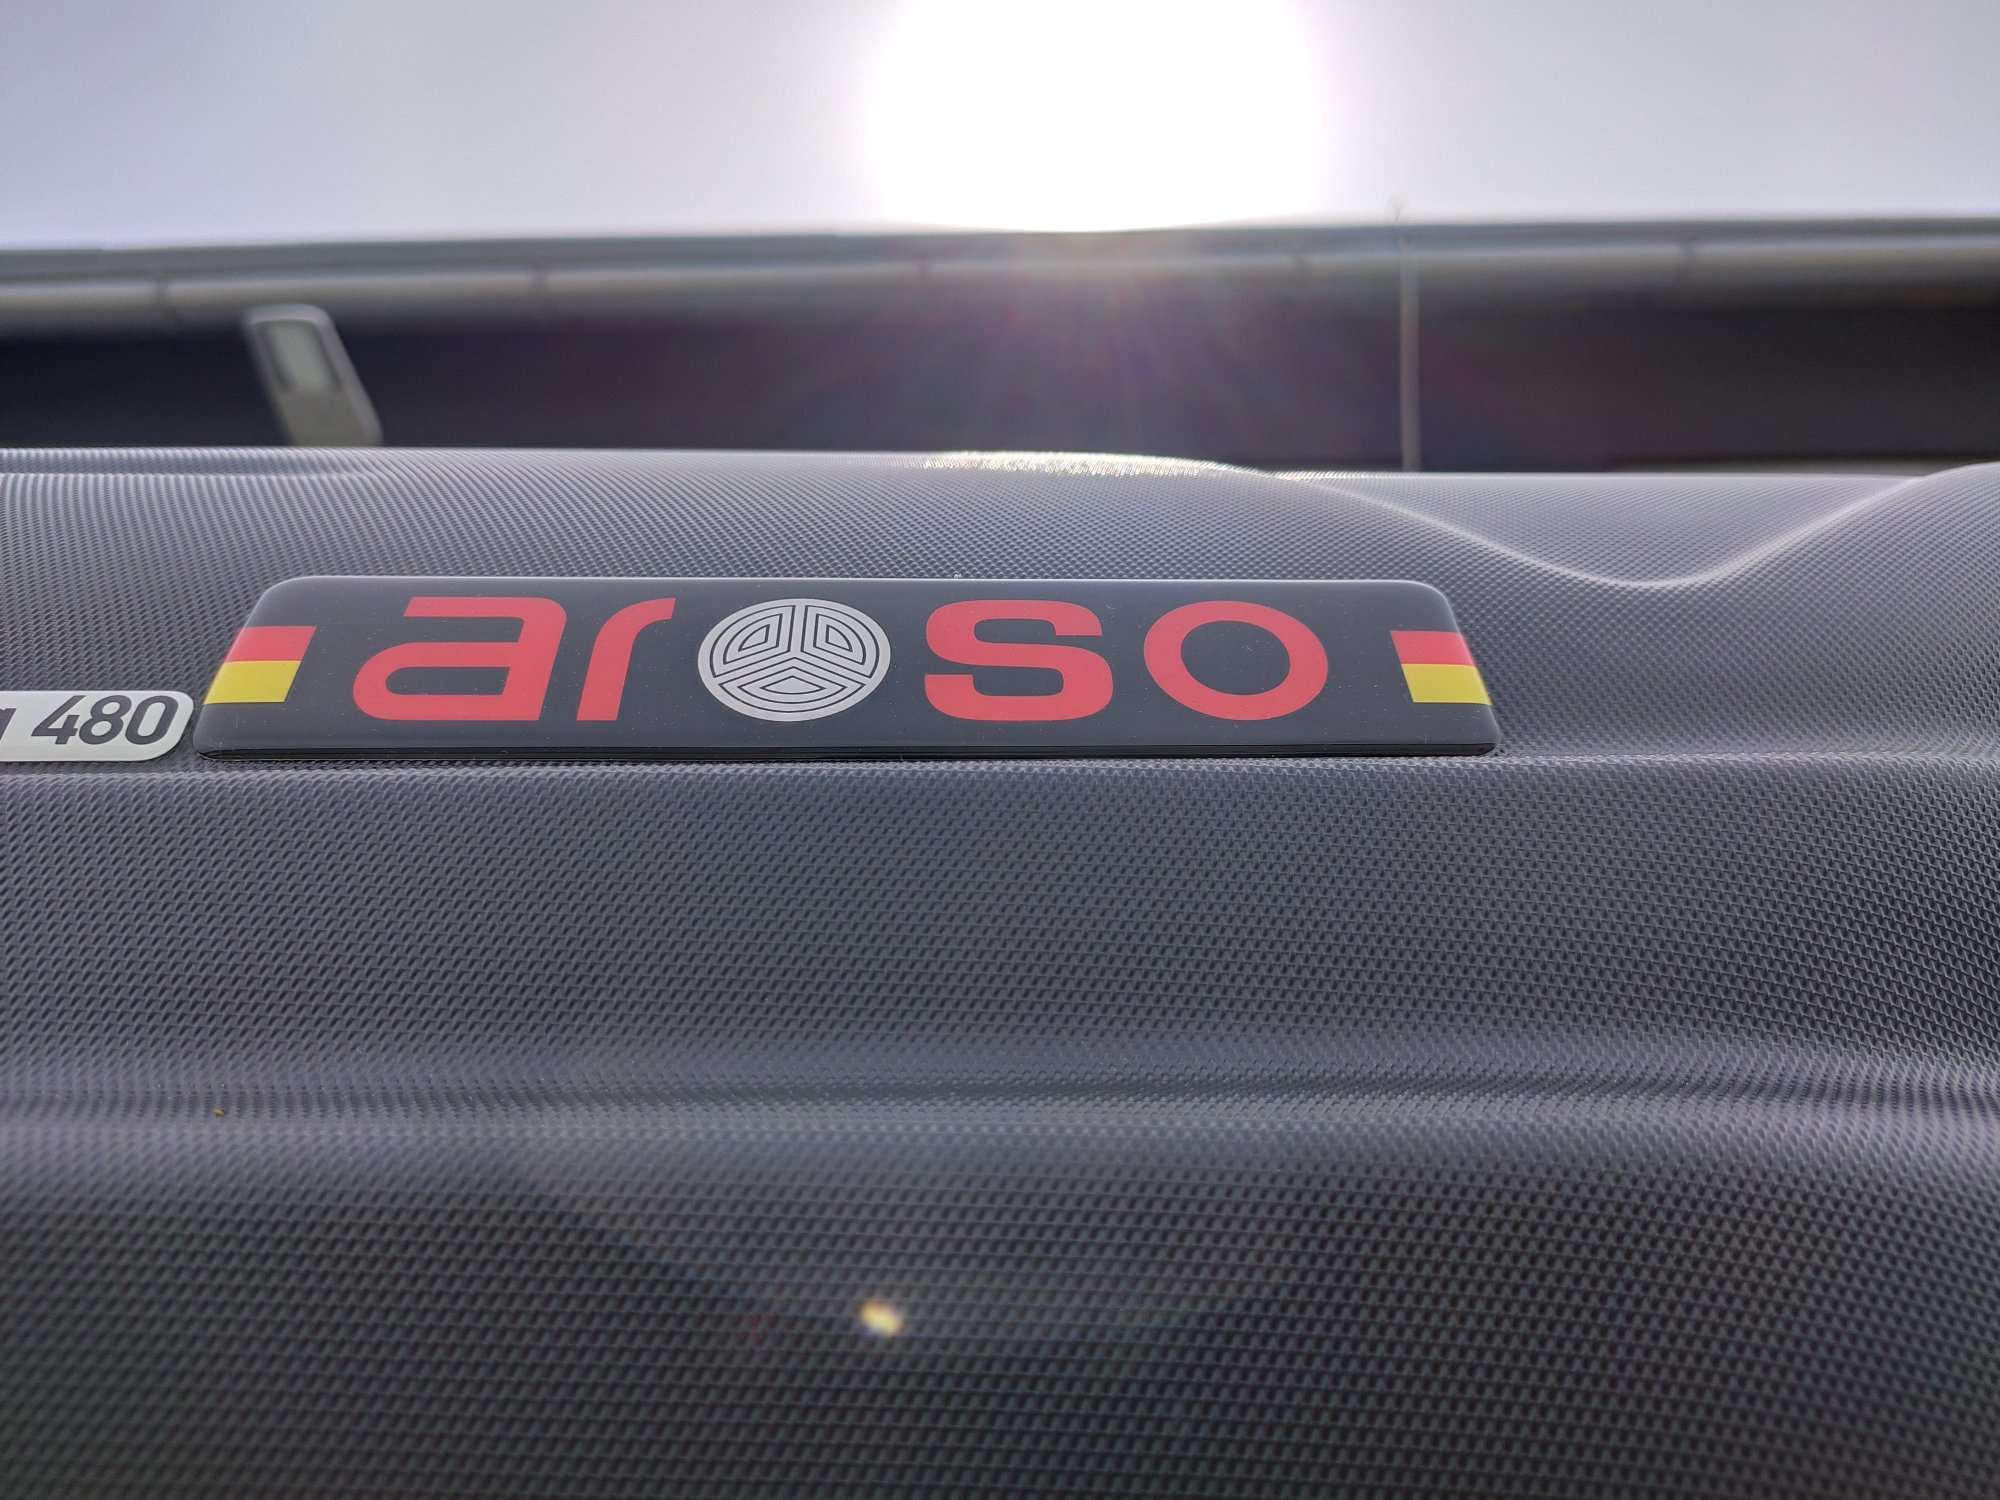 Montáž střešního boxu Aroso Nürnberg 480 Duolift na vozidlo zákazníka v dílně Filsonstore Uhříněves